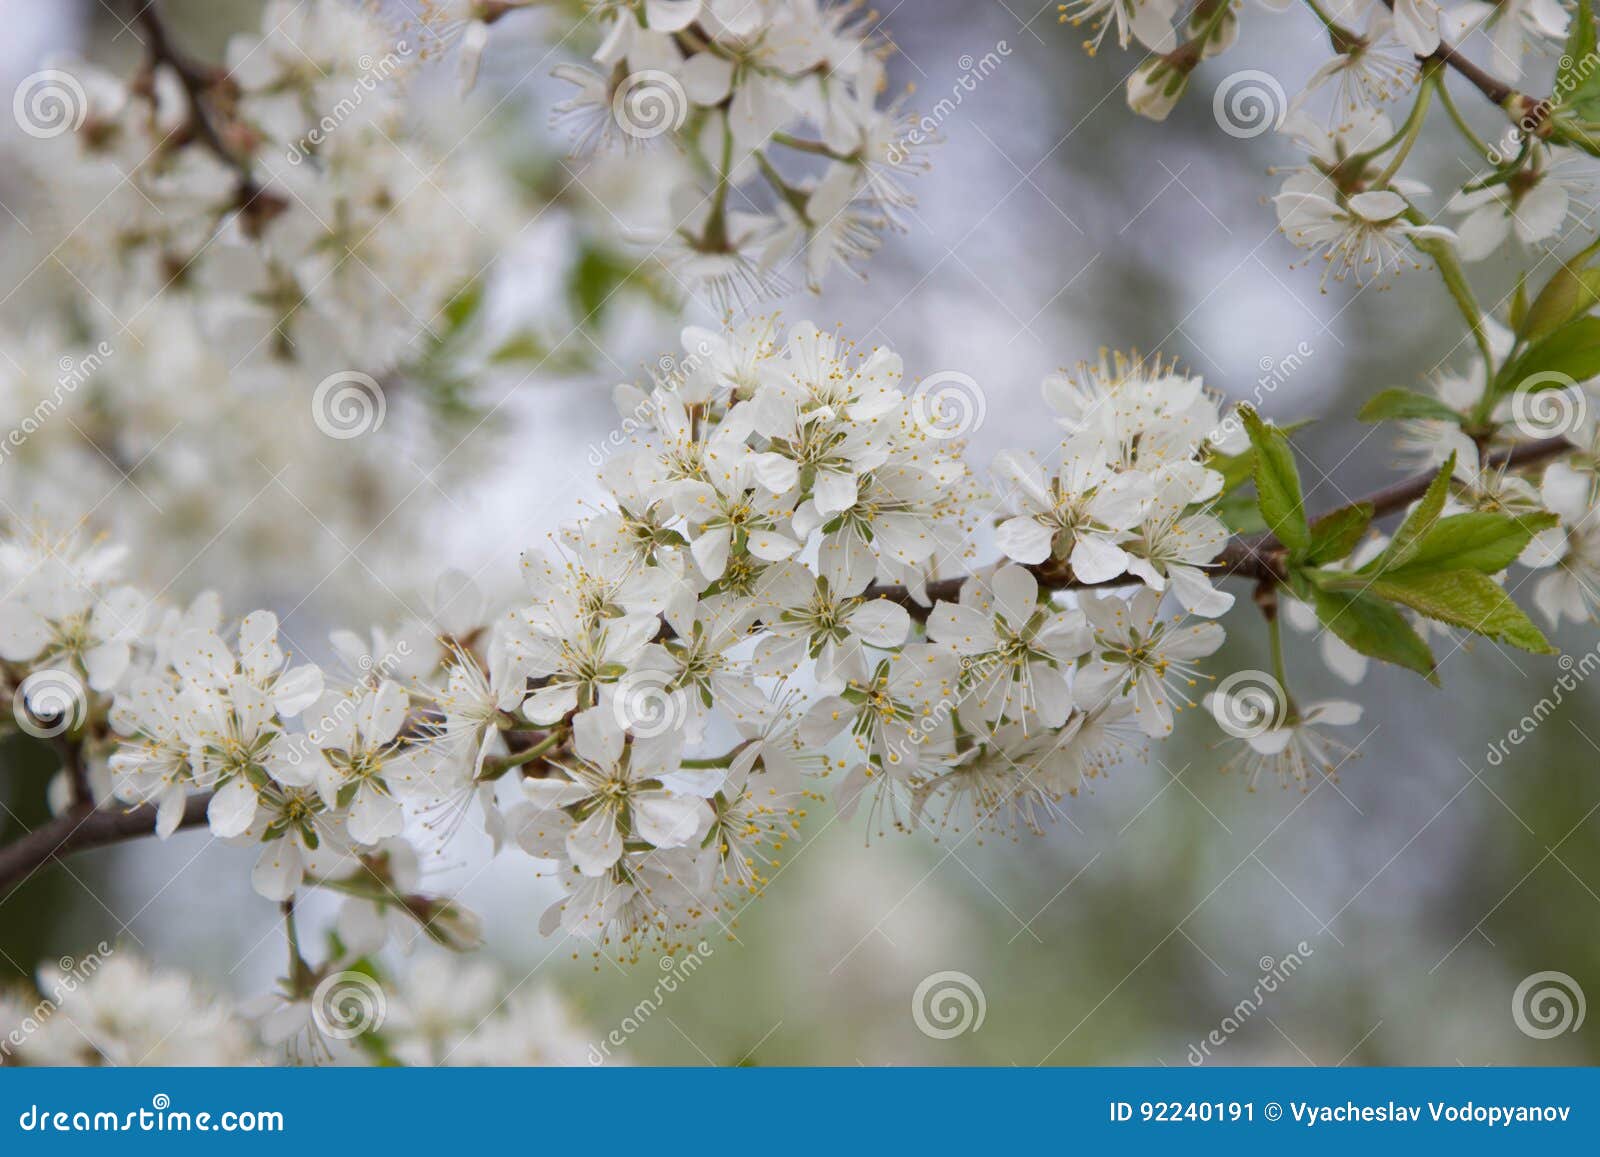 Blühender Birnenbaum Weiße Blumen auf Baumast